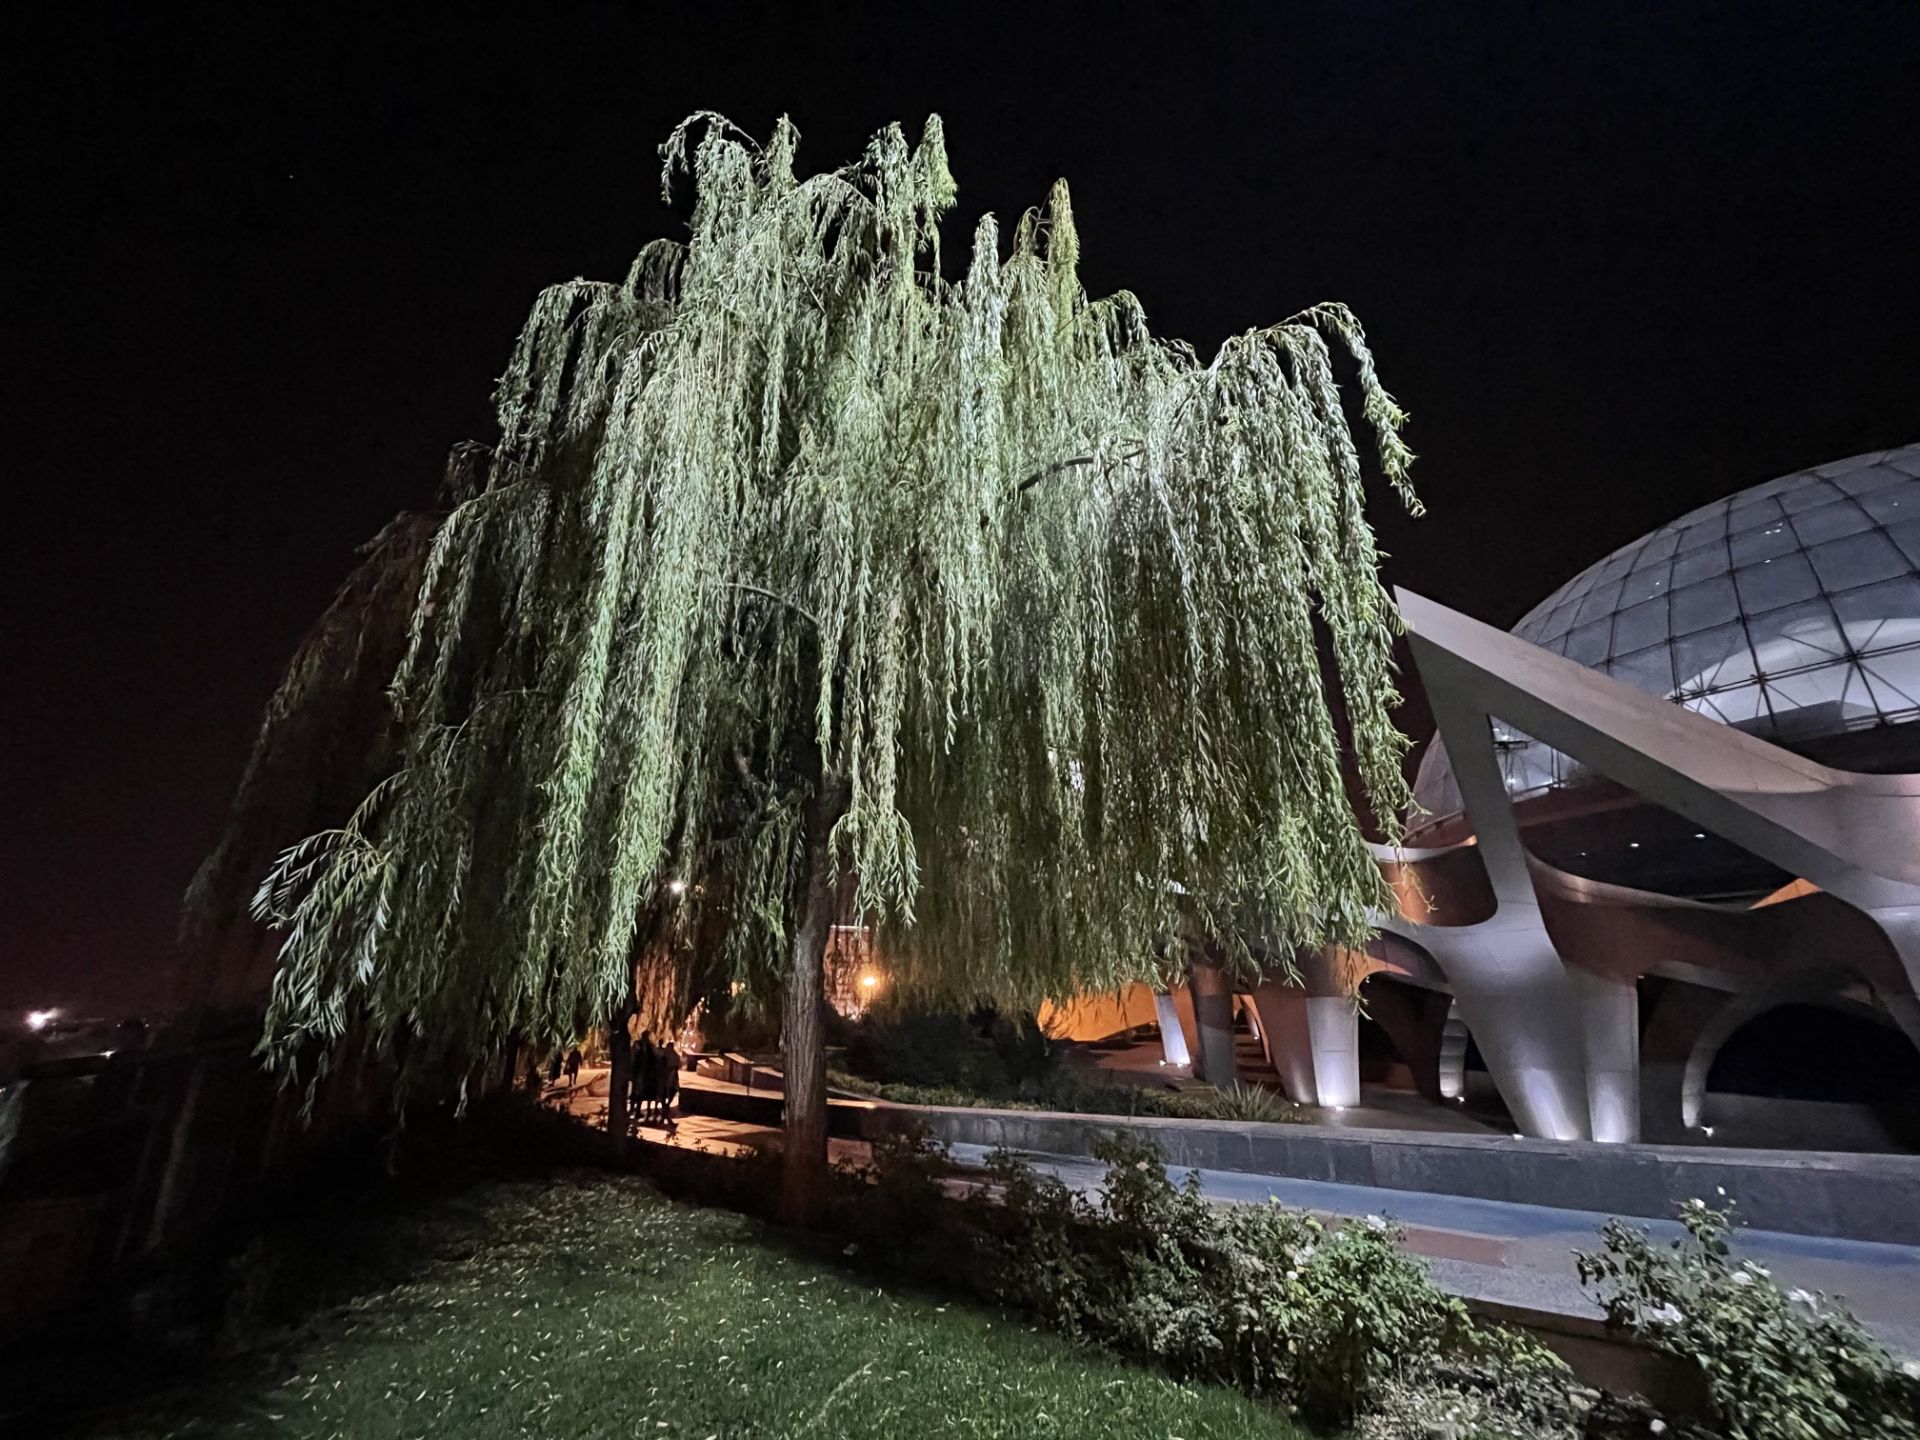 نمونه عکس دوربین اولتراواید آیفون ۱۲ پرو اپل در تاریکی - درختی در کنار گنبد مینا پارک آب و آتش تهران